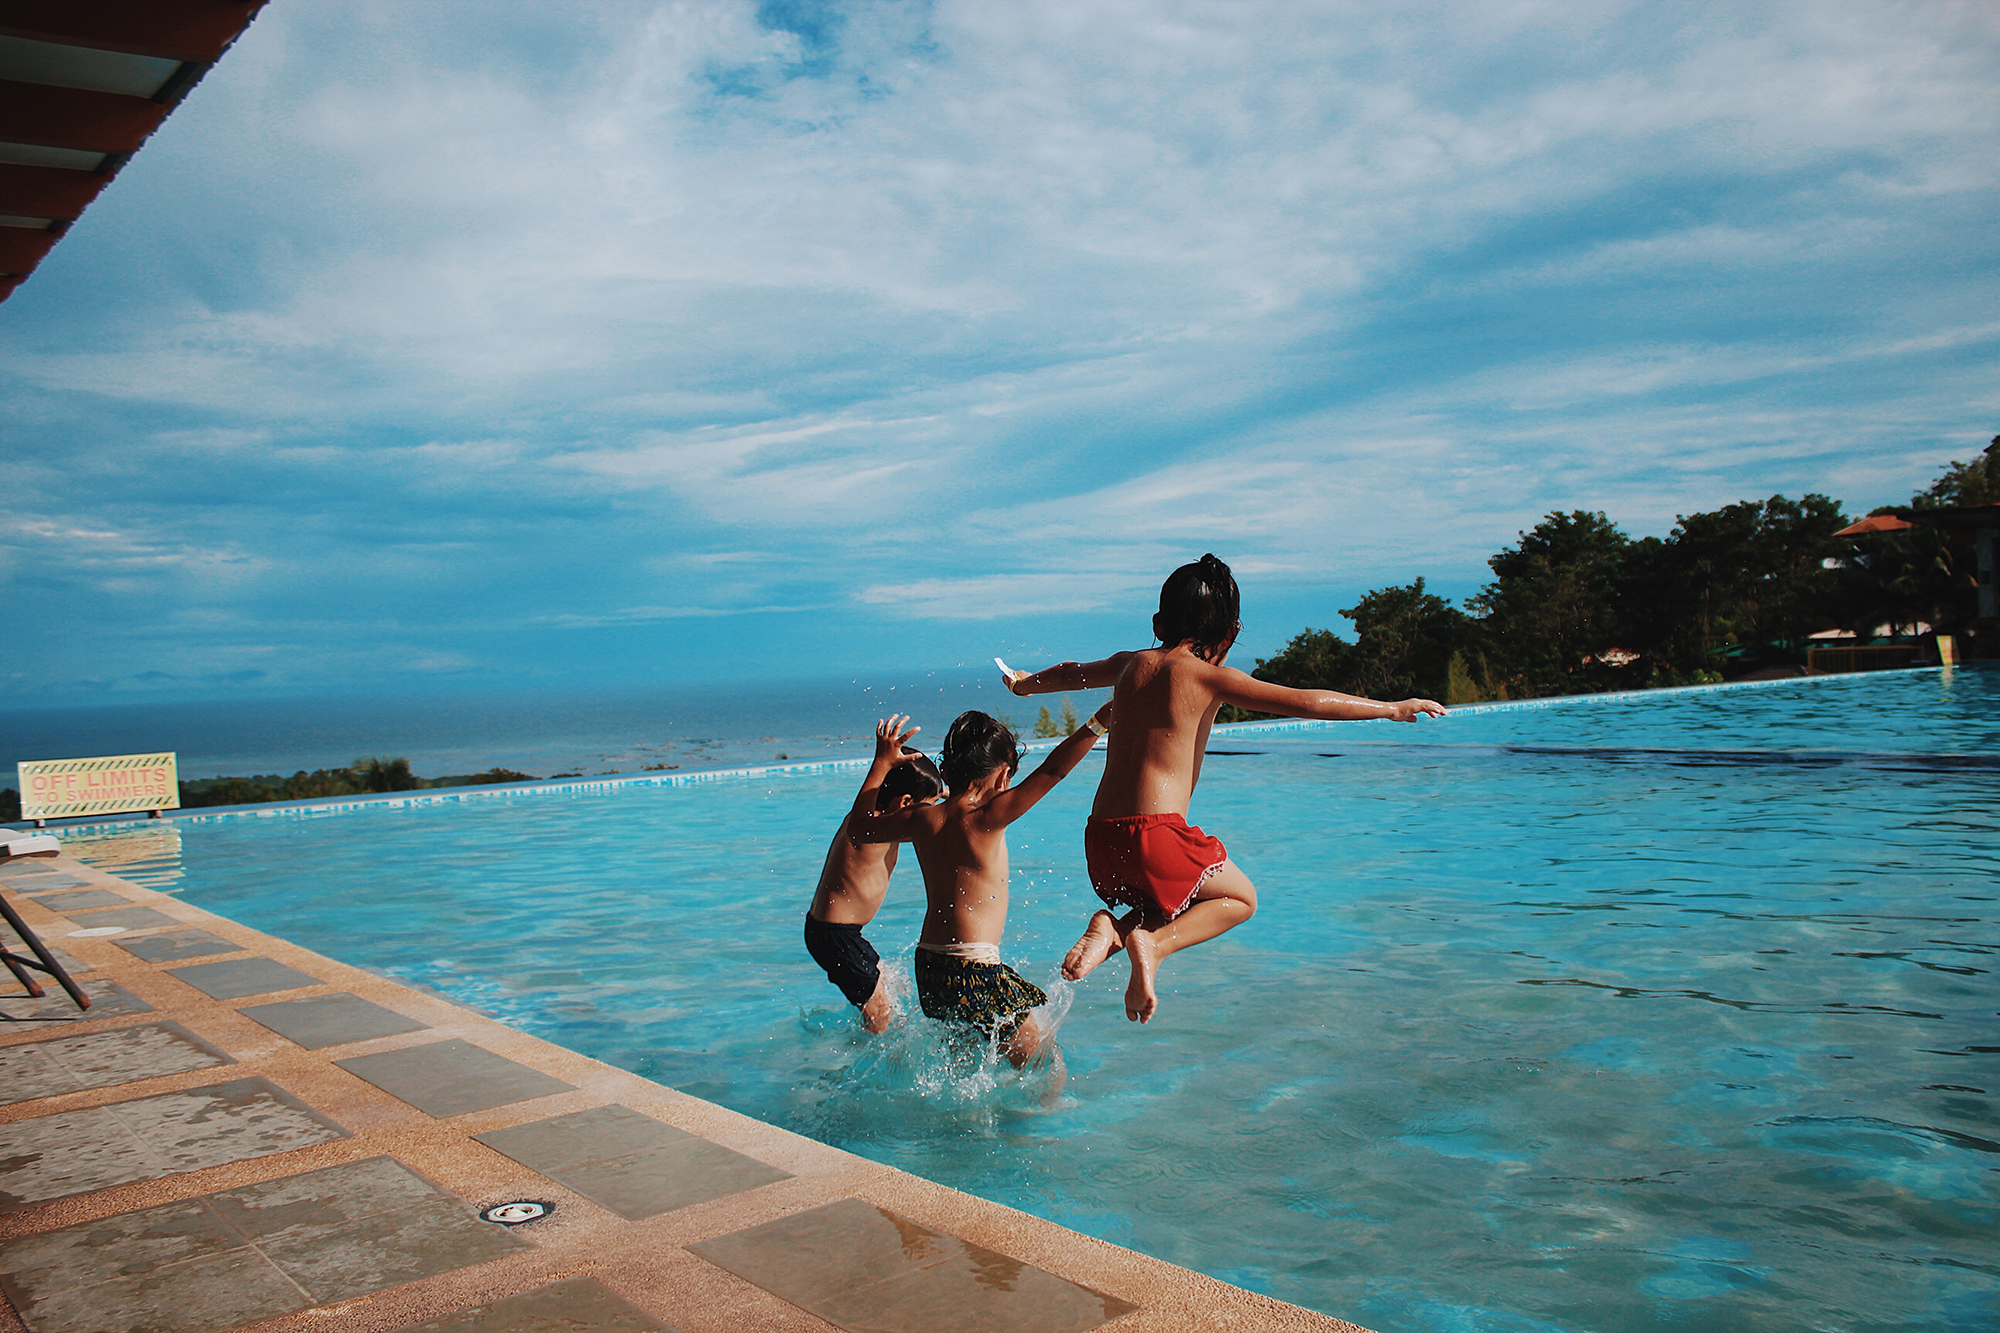 Enfants sautant dans une piscine